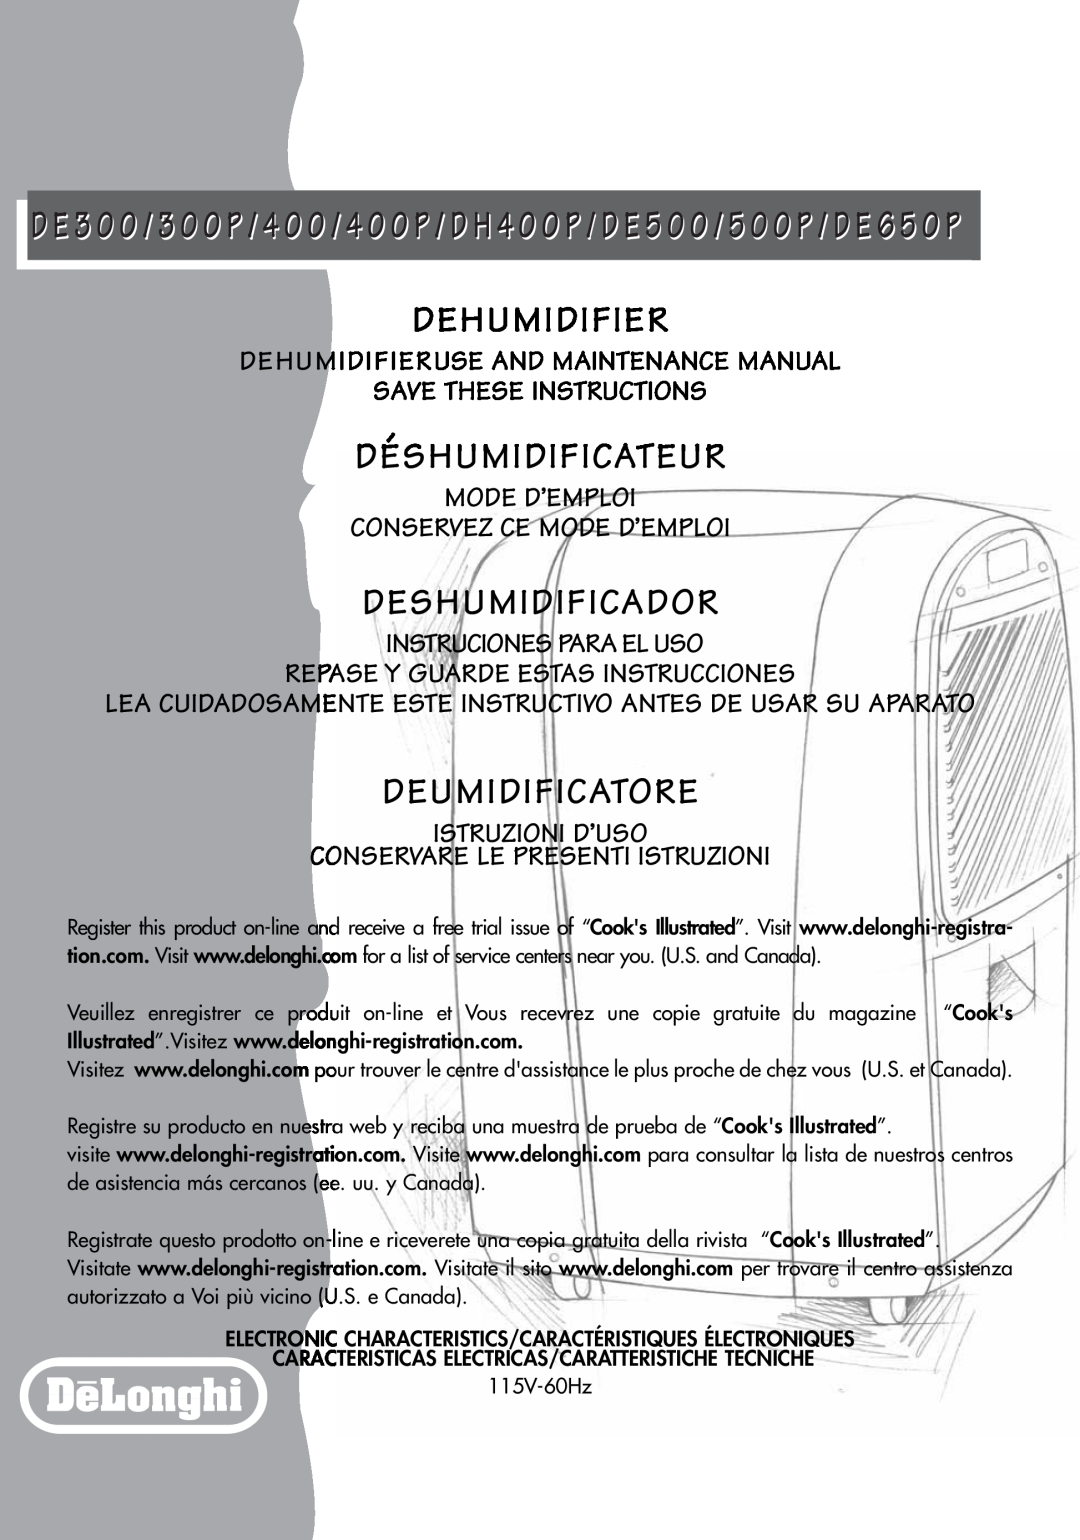 DeLonghi DE300P, DE650P manual Dehumidifier, Déshumidificateur, Deshumidificador, Deumidificatore, Save These Instructions 